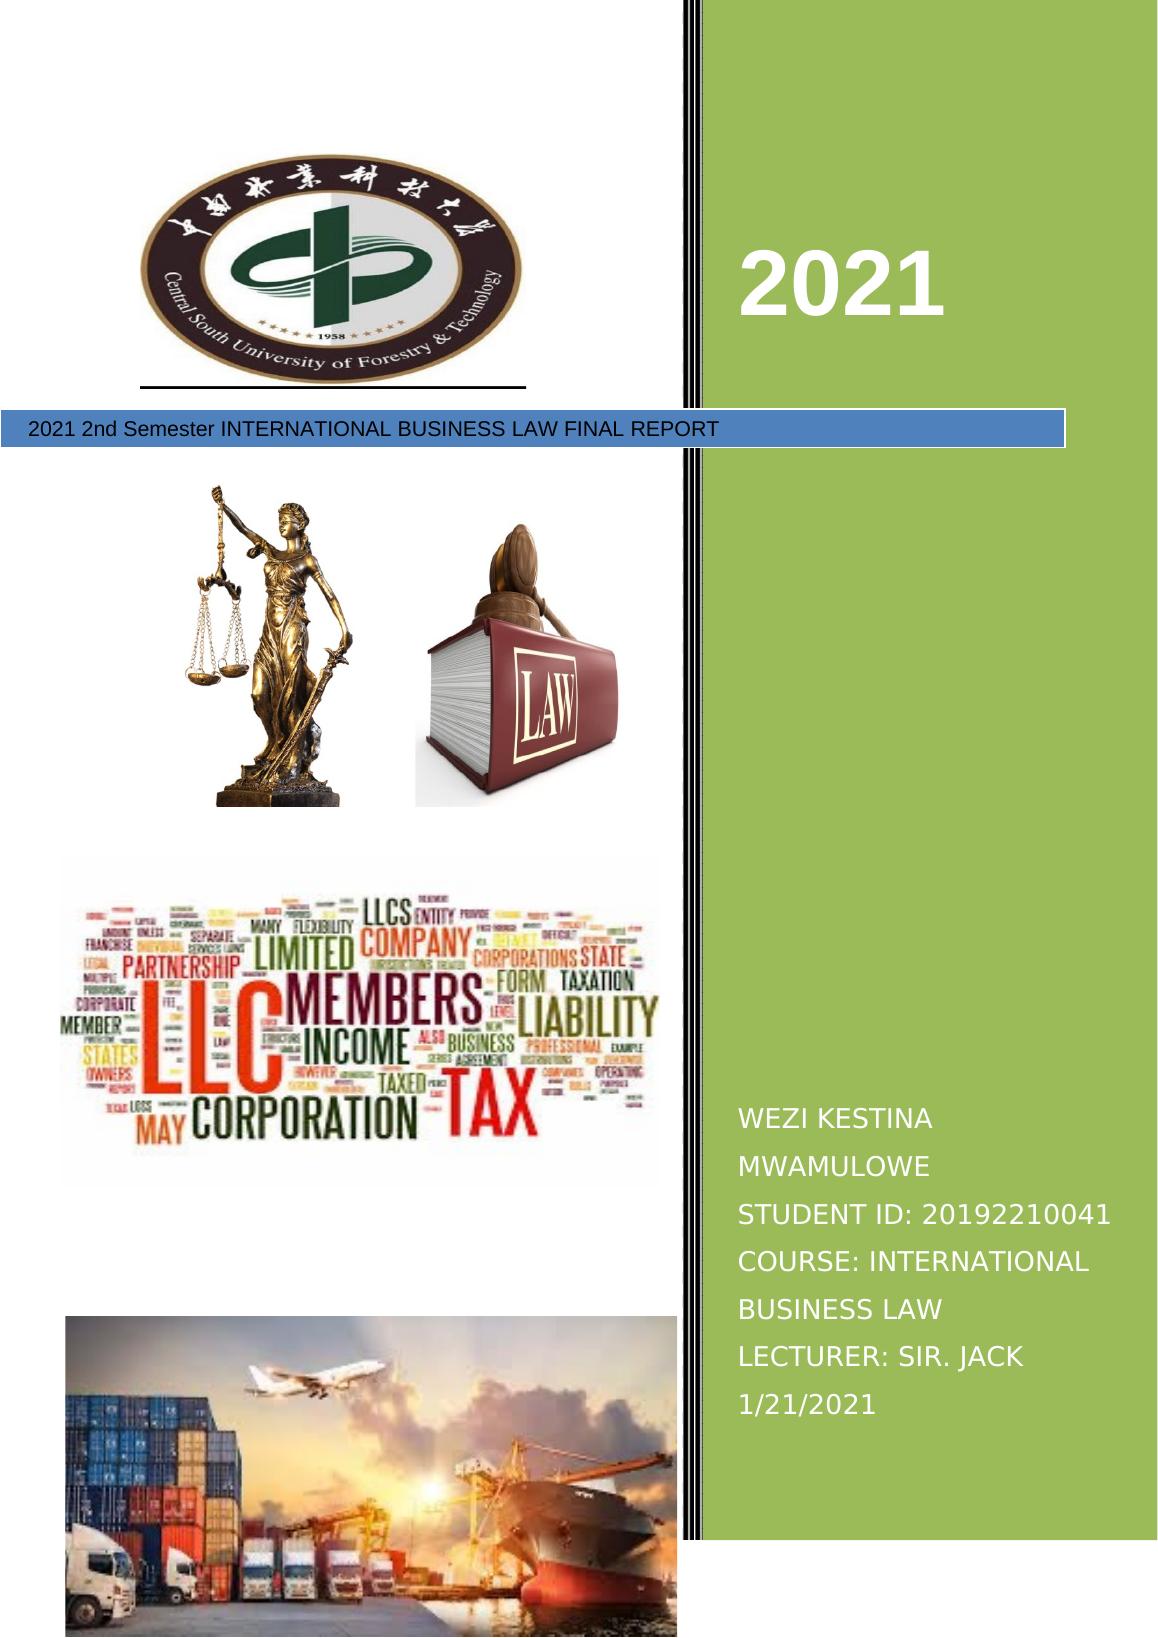 JACK 1/21/2021 2021 WEZI KESTINA MWAMULOWE 2nd Semester INTERNATIONAL BUSINESS LAW FINAL REPORT 2021 WESTINA MWAMULOWE 2021_1